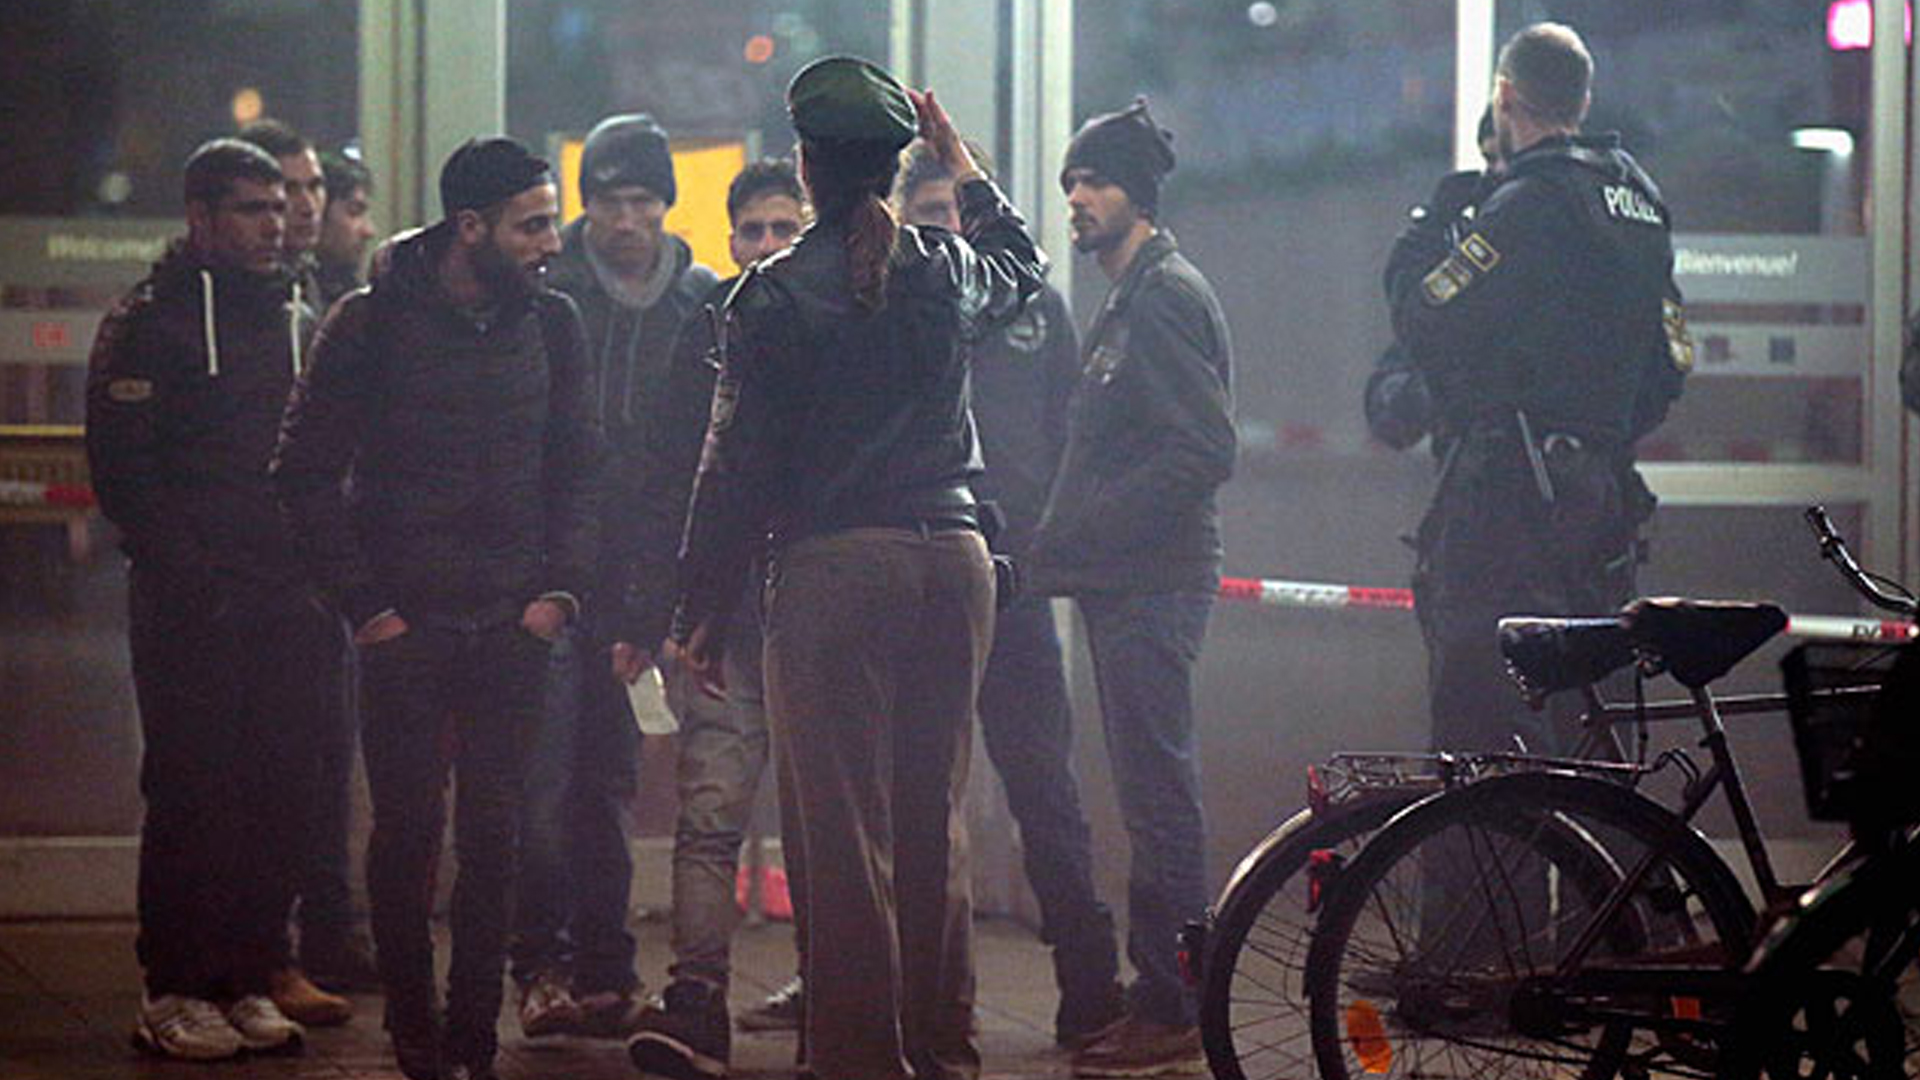 Джихадистов-насильников встречает морально разложившееся общество Европы